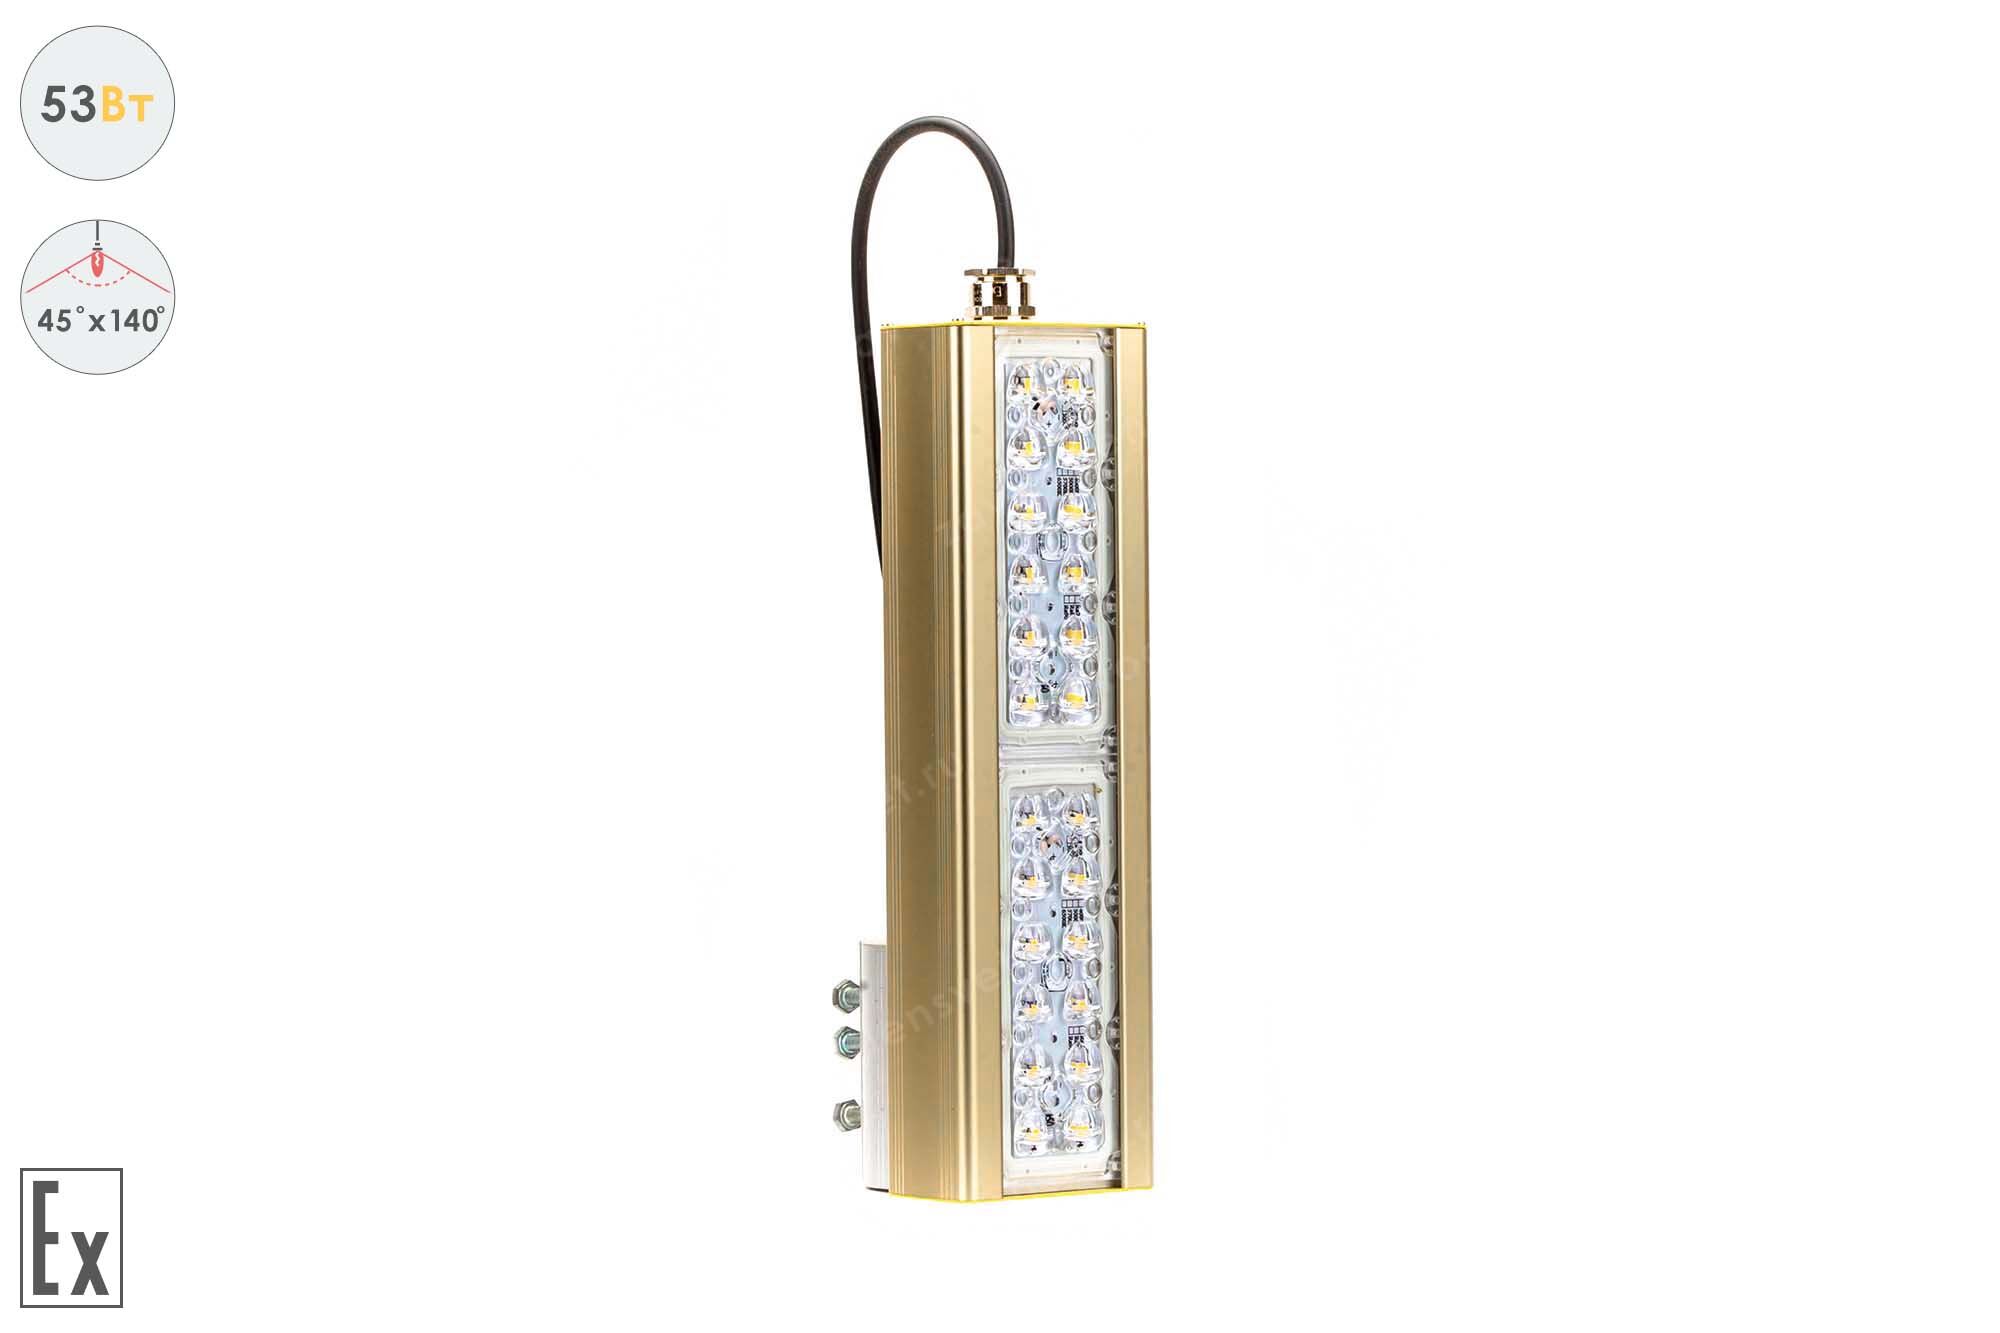 Светодиодный светильник Магистраль Взрывозащищенная GOLD, консоль K-1, 53 Вт, 45X140°